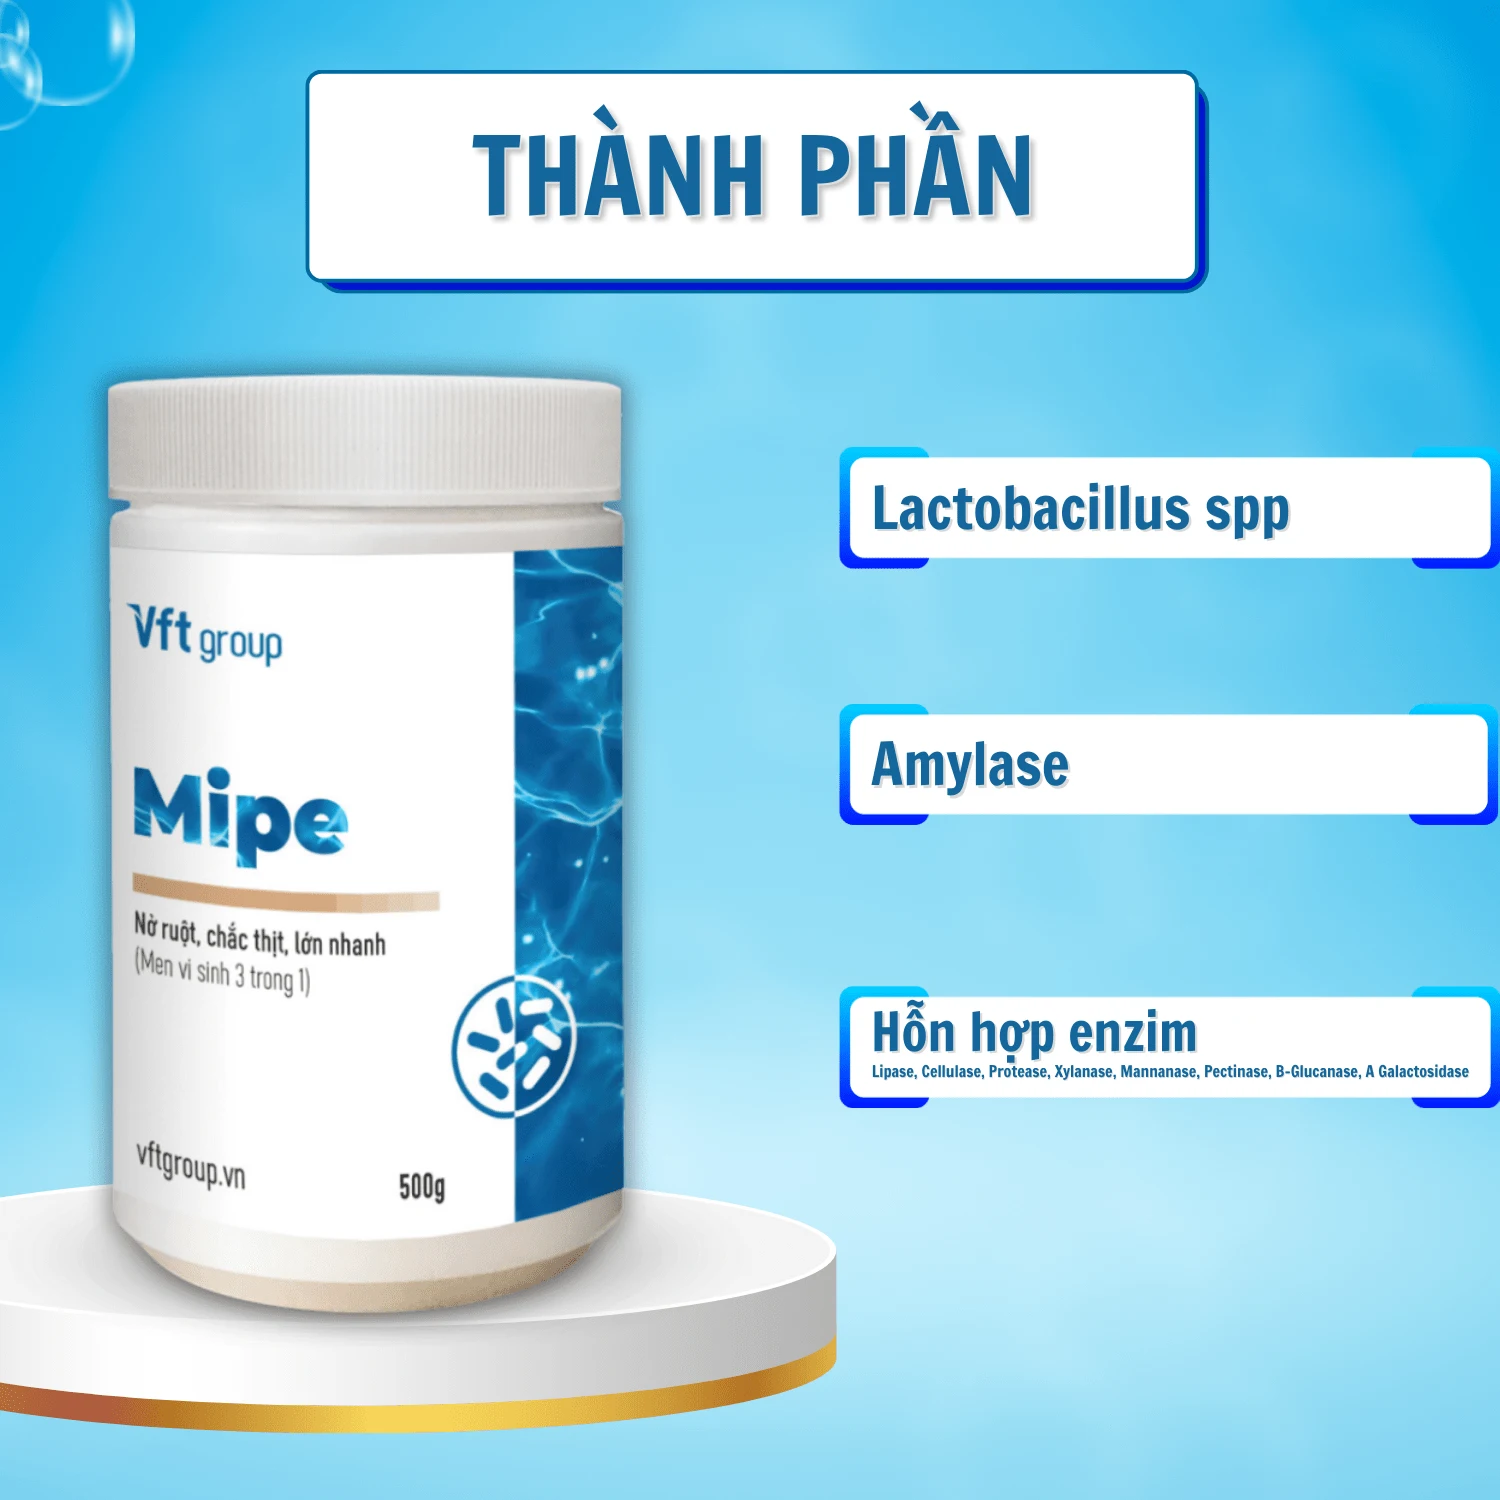 Men tiêu hóa vi sinh dành cho tôm Mipe có chứa nhiều lợi khuẩn kích thích tiêu hóa trong ruột tôm, giúp tôm lớn khỏe